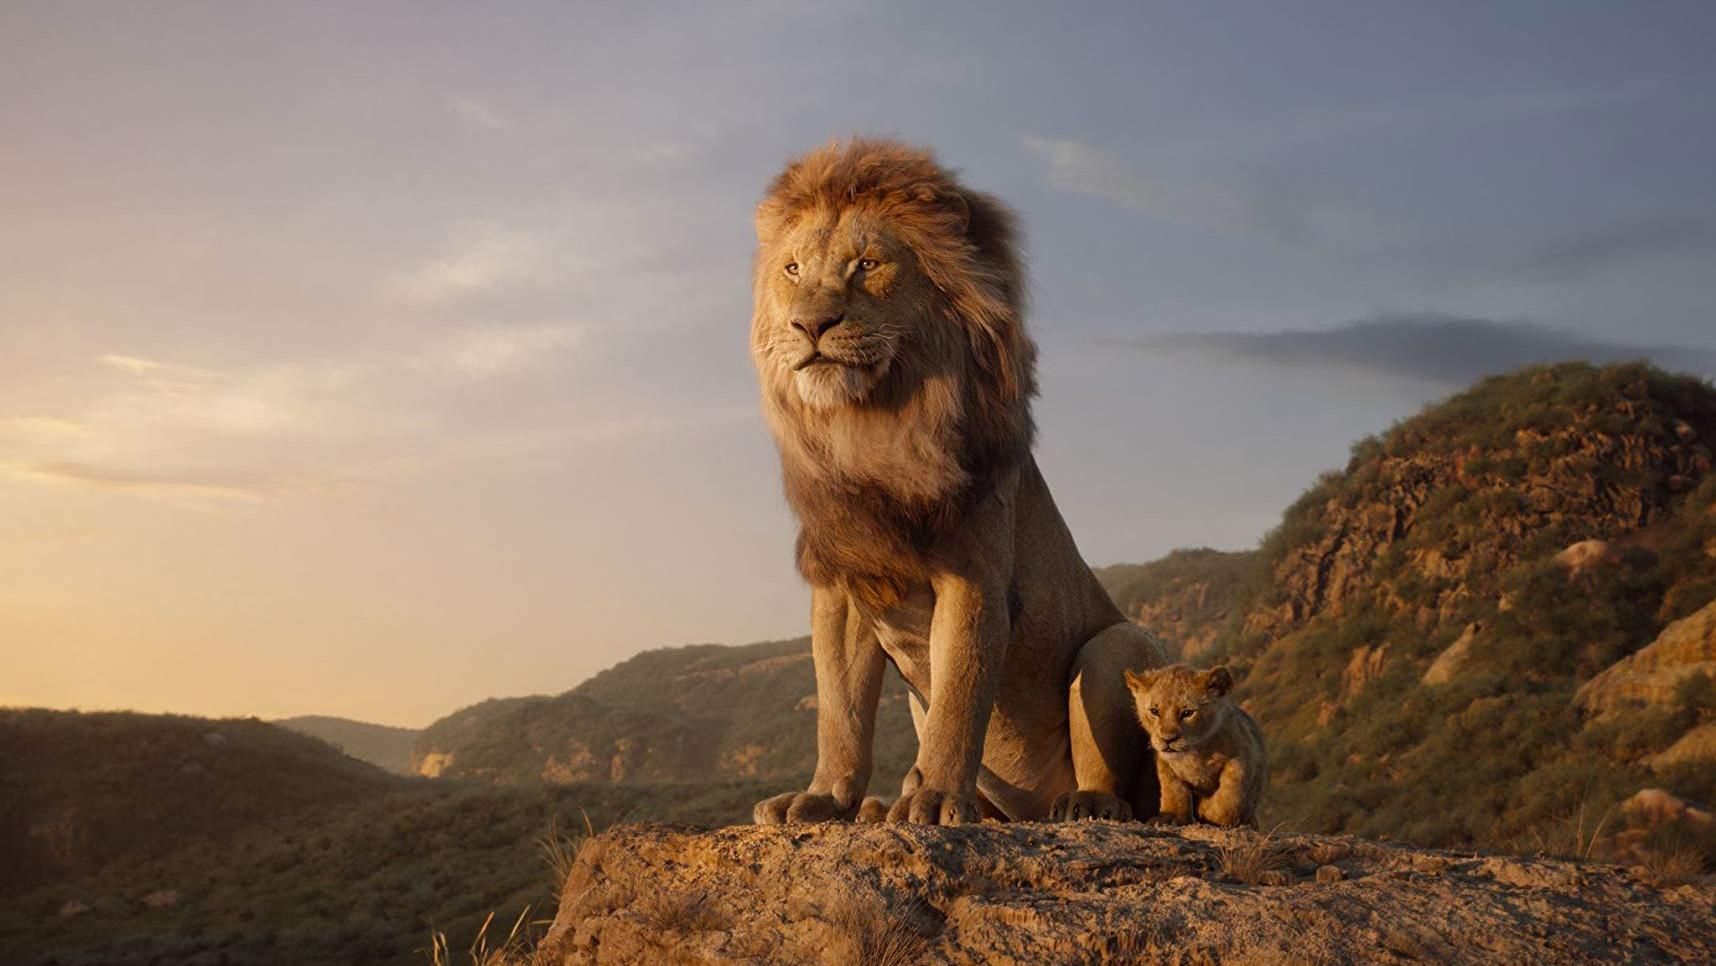 "Король Лев": в сети появился новый тизер культового римейка от Disney